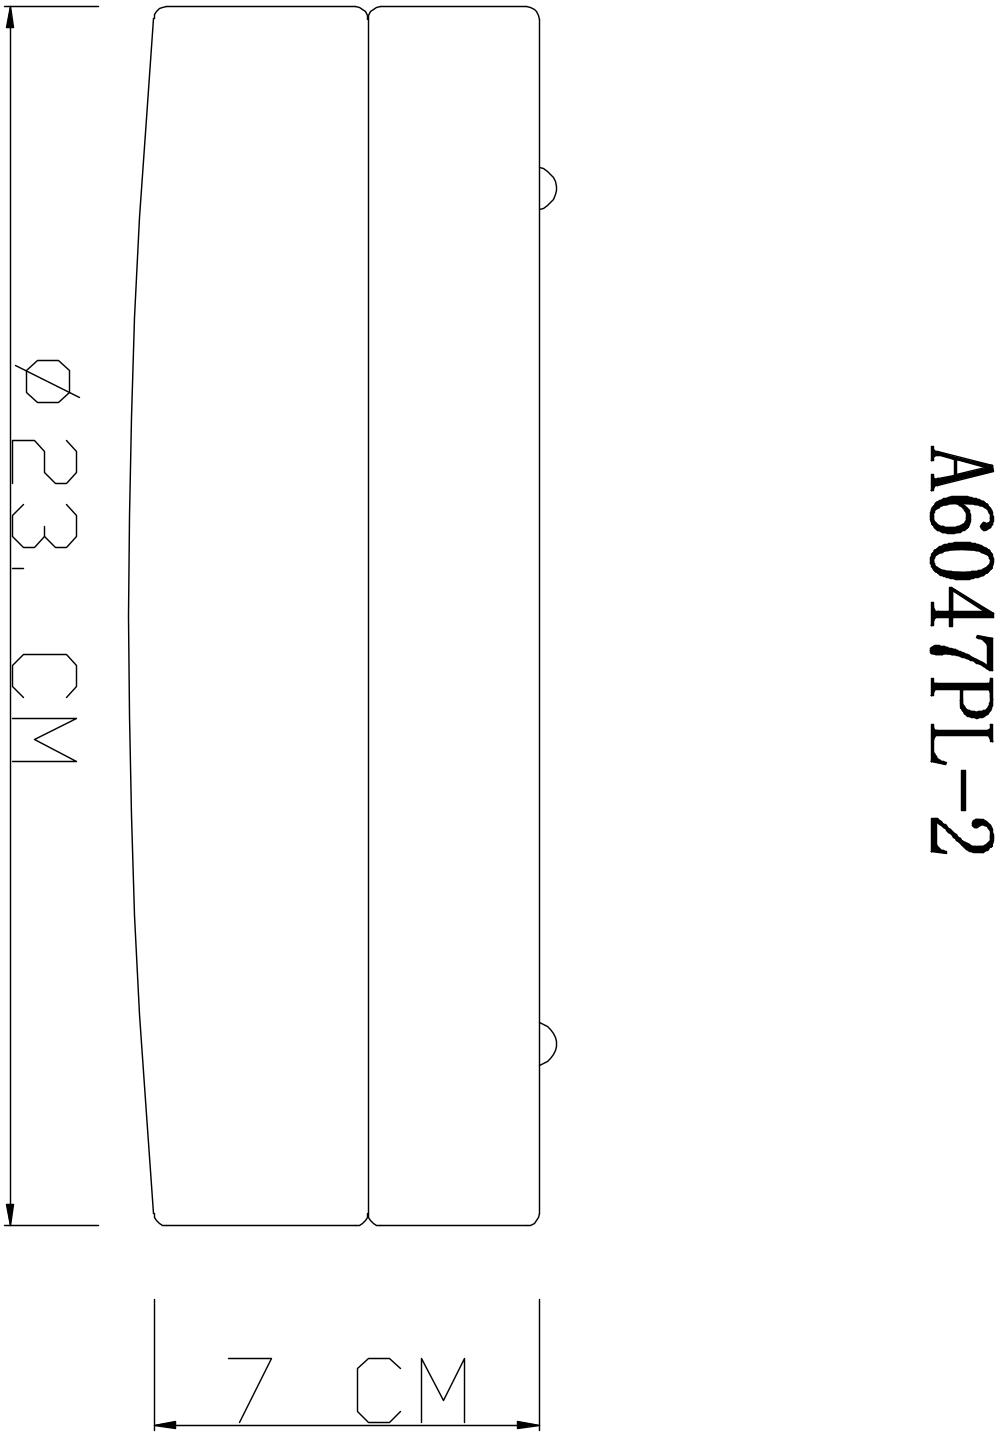 Потолочный светильник Arte Lamp Aqua-Tablet A6047PL-2CC